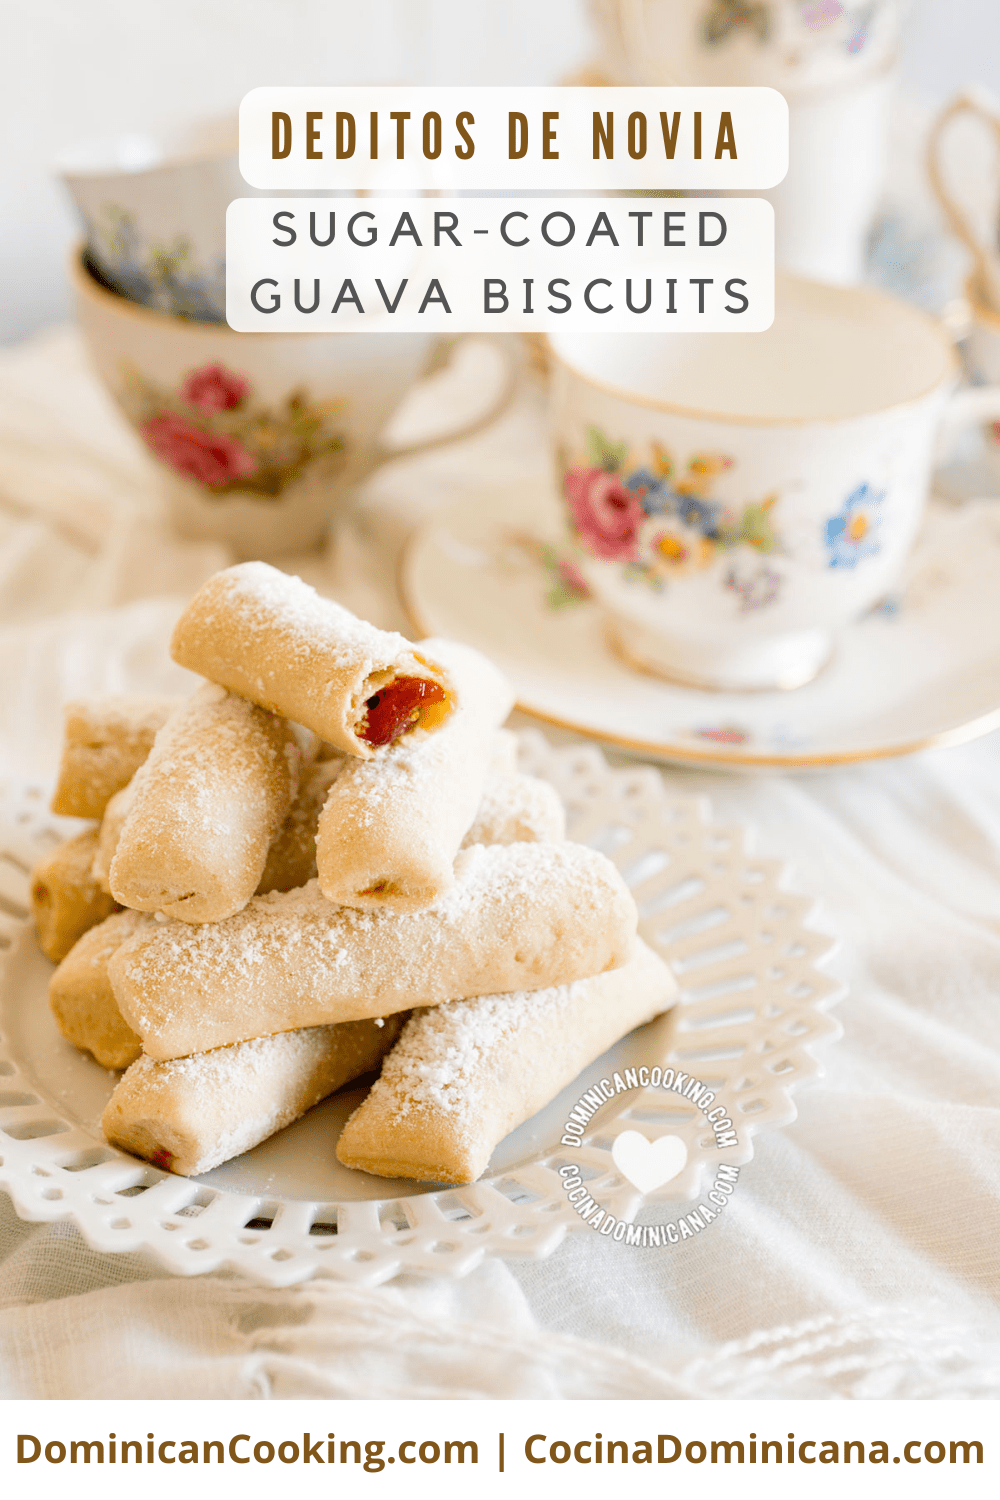 Deditos de novia (sugar-coated guava biscuits) recipe.